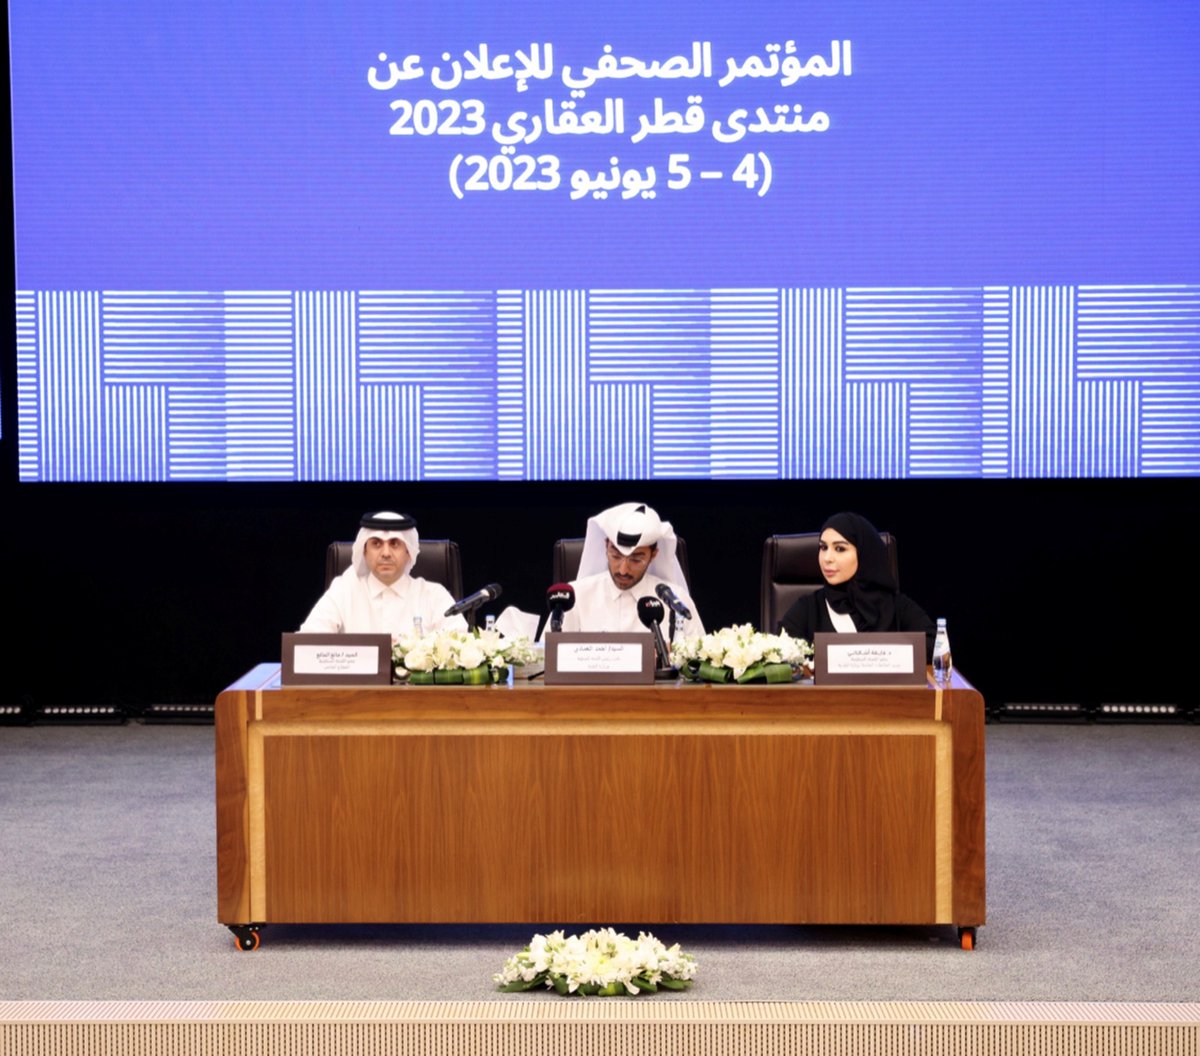 وزارة البلدية تنظم منتدى #قطر العقاري الأول في يونيو المقبل
#قنا
ow.ly/T2nC50Oyp7J